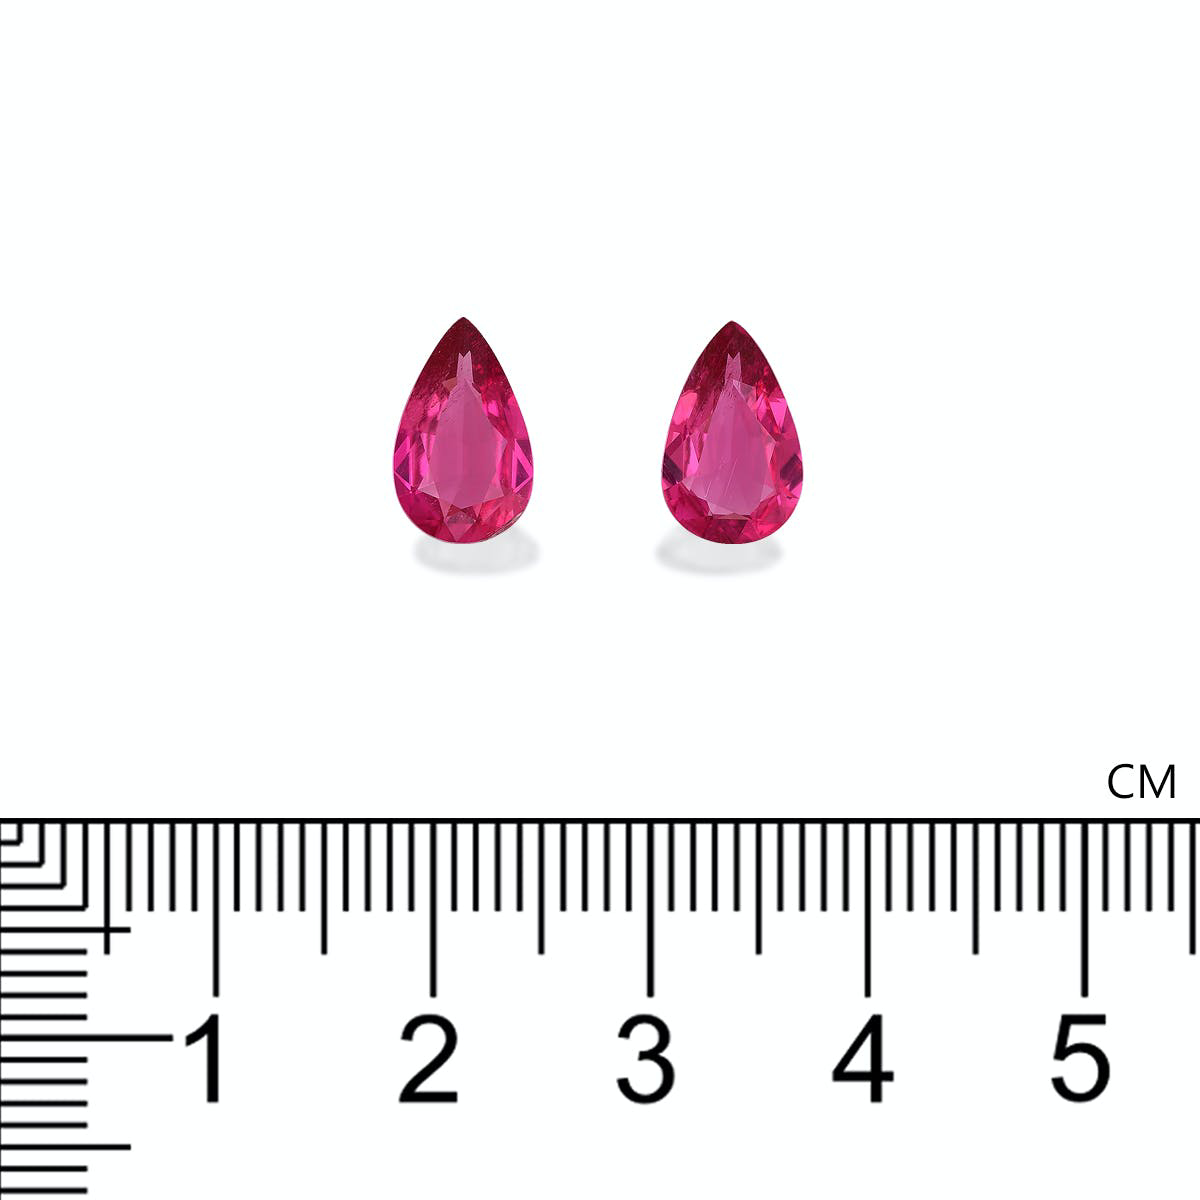 Picture of Vivid Pink Rubellite Tourmaline 2.99ct - Pair (RL1254)